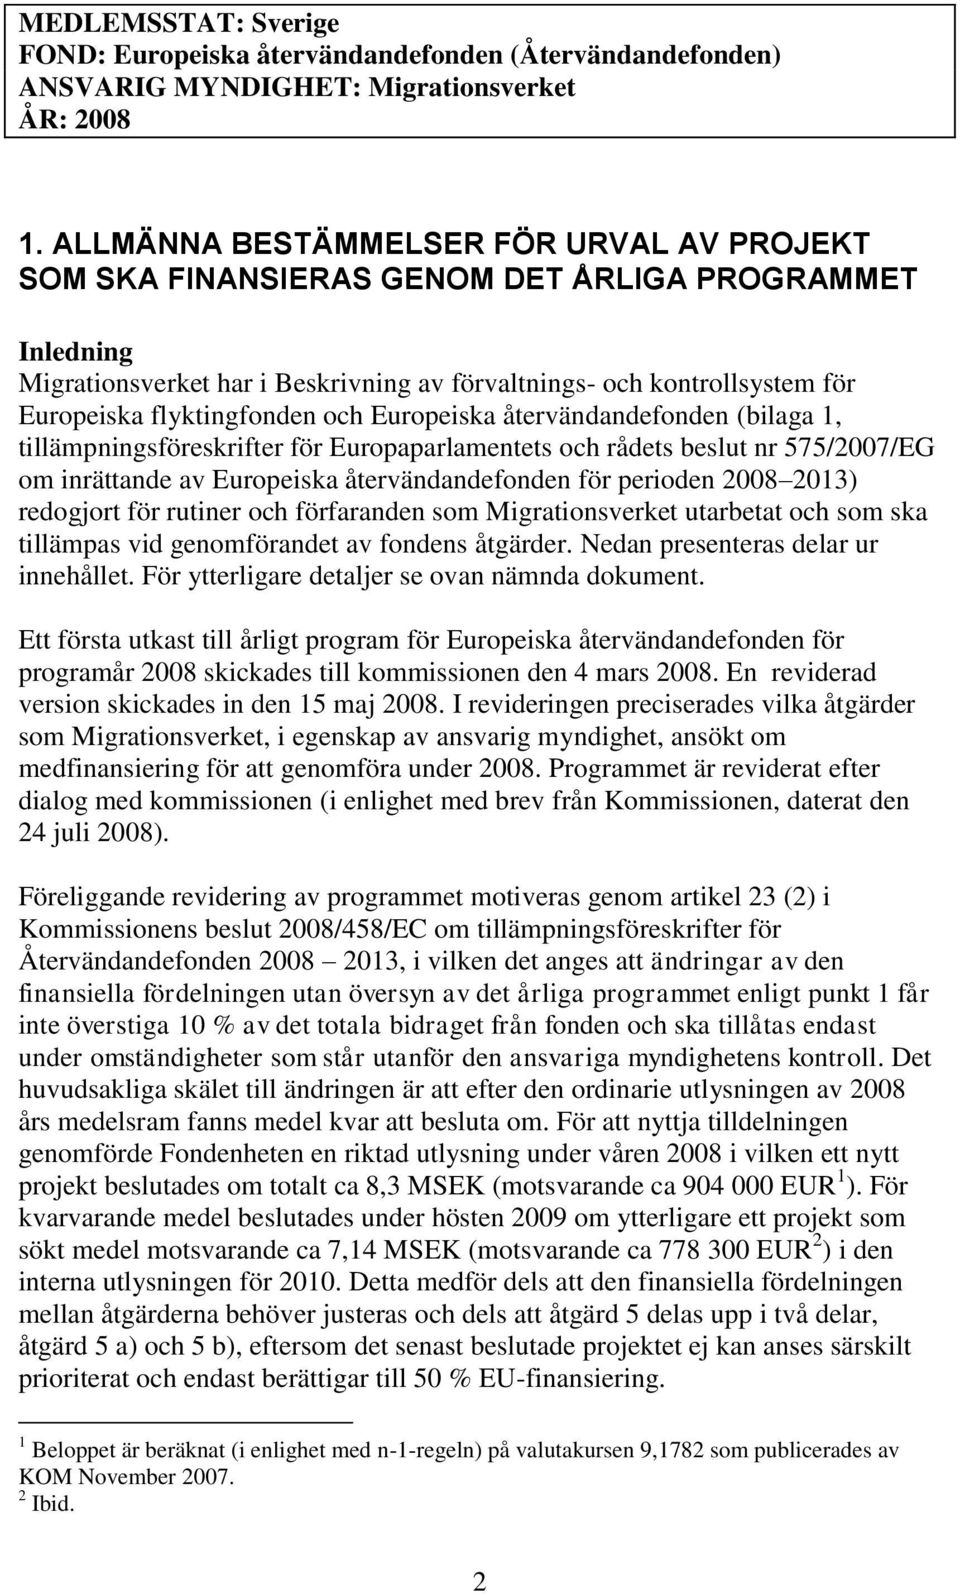 flyktingfonden och Europeiska återvändandefonden (bilaga 1, tillämpningsföreskrifter för Europaparlamentets och rådets beslut nr 575/2007/EG om inrättande av Europeiska återvändandefonden för